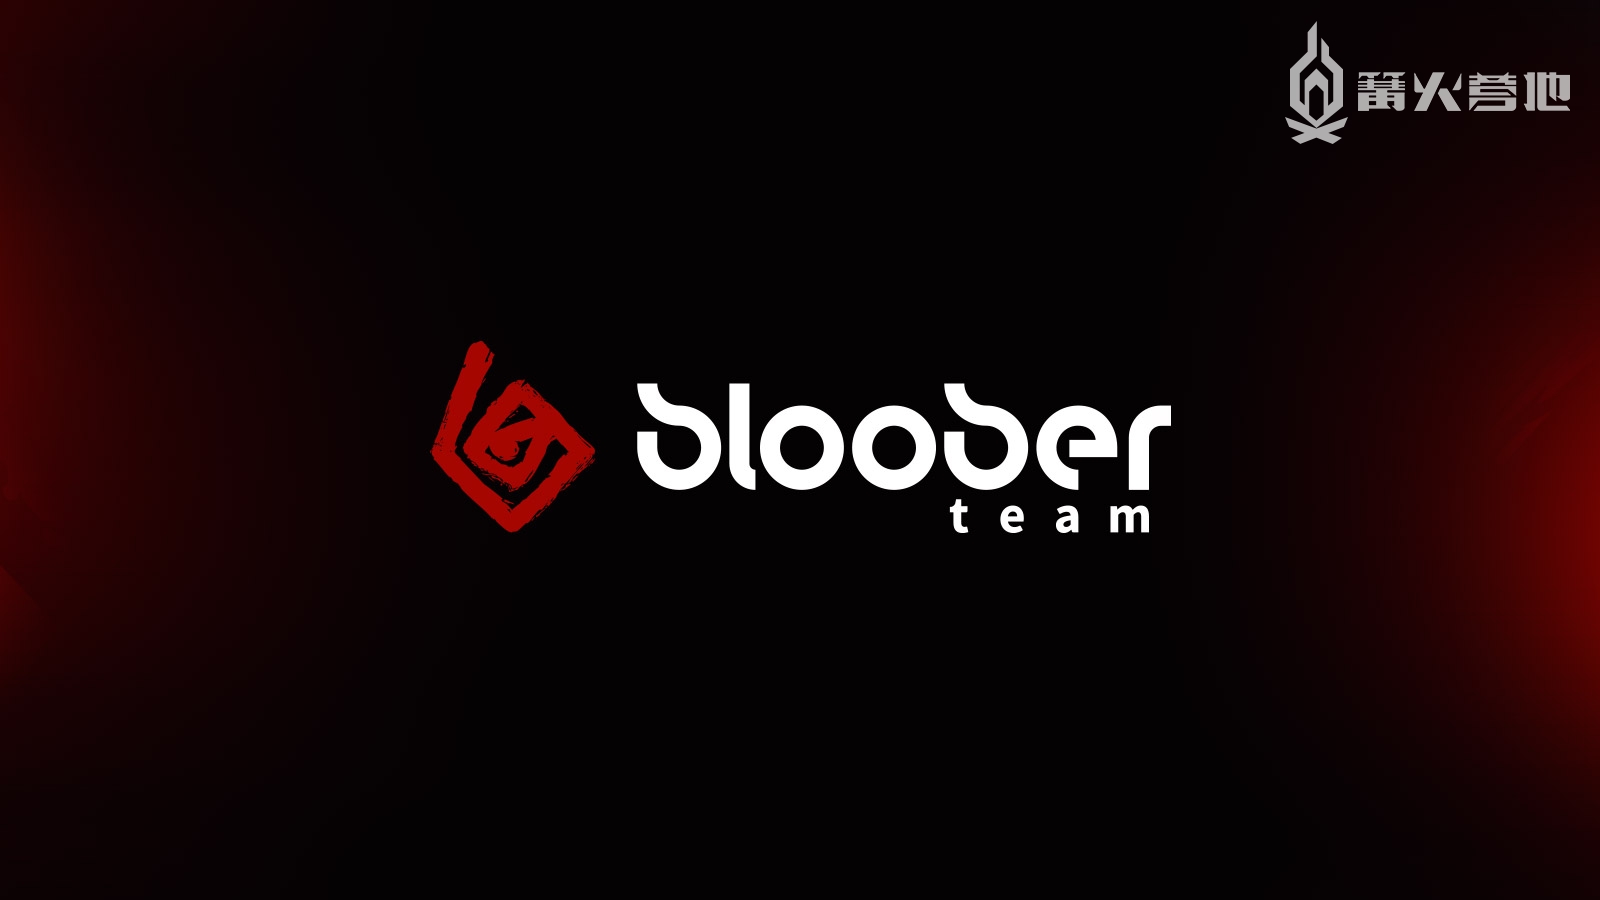 Bloober Team 将与 Konami 展开战略合作，公开创造高品质游戏内容